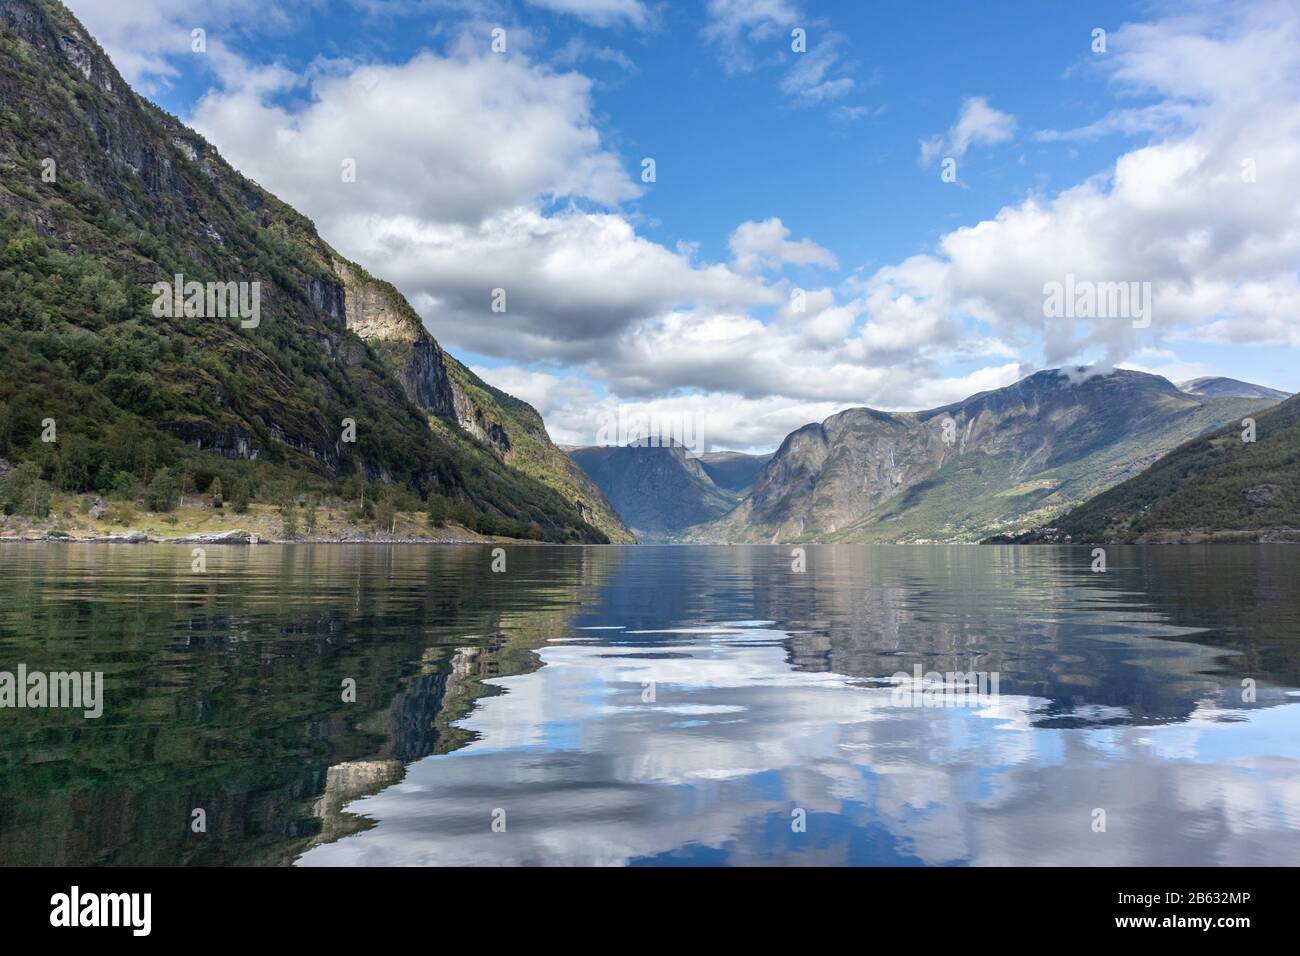 Blick von der Wasseroberfläche mit heller Reflexion. Norwegen Aurlandsfjord-Reise, Kajak-Tour. Natur, Berge, blaue Landschaft, bewölkte epische Aussicht. Stockfoto